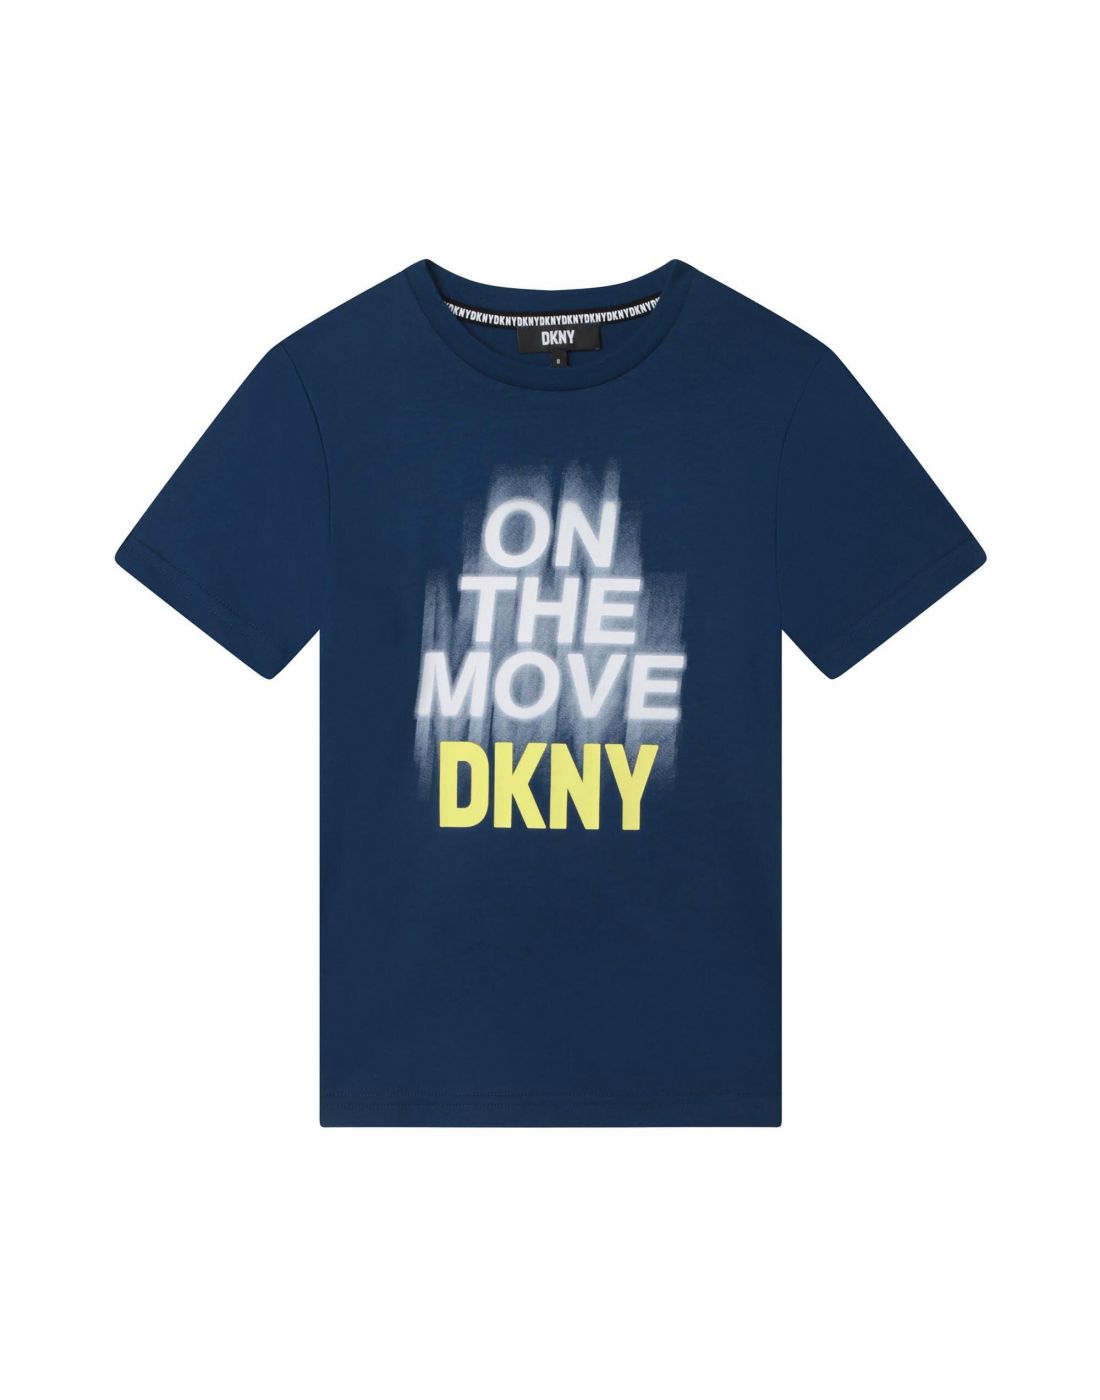 D.K.N.Y Kids Print Top